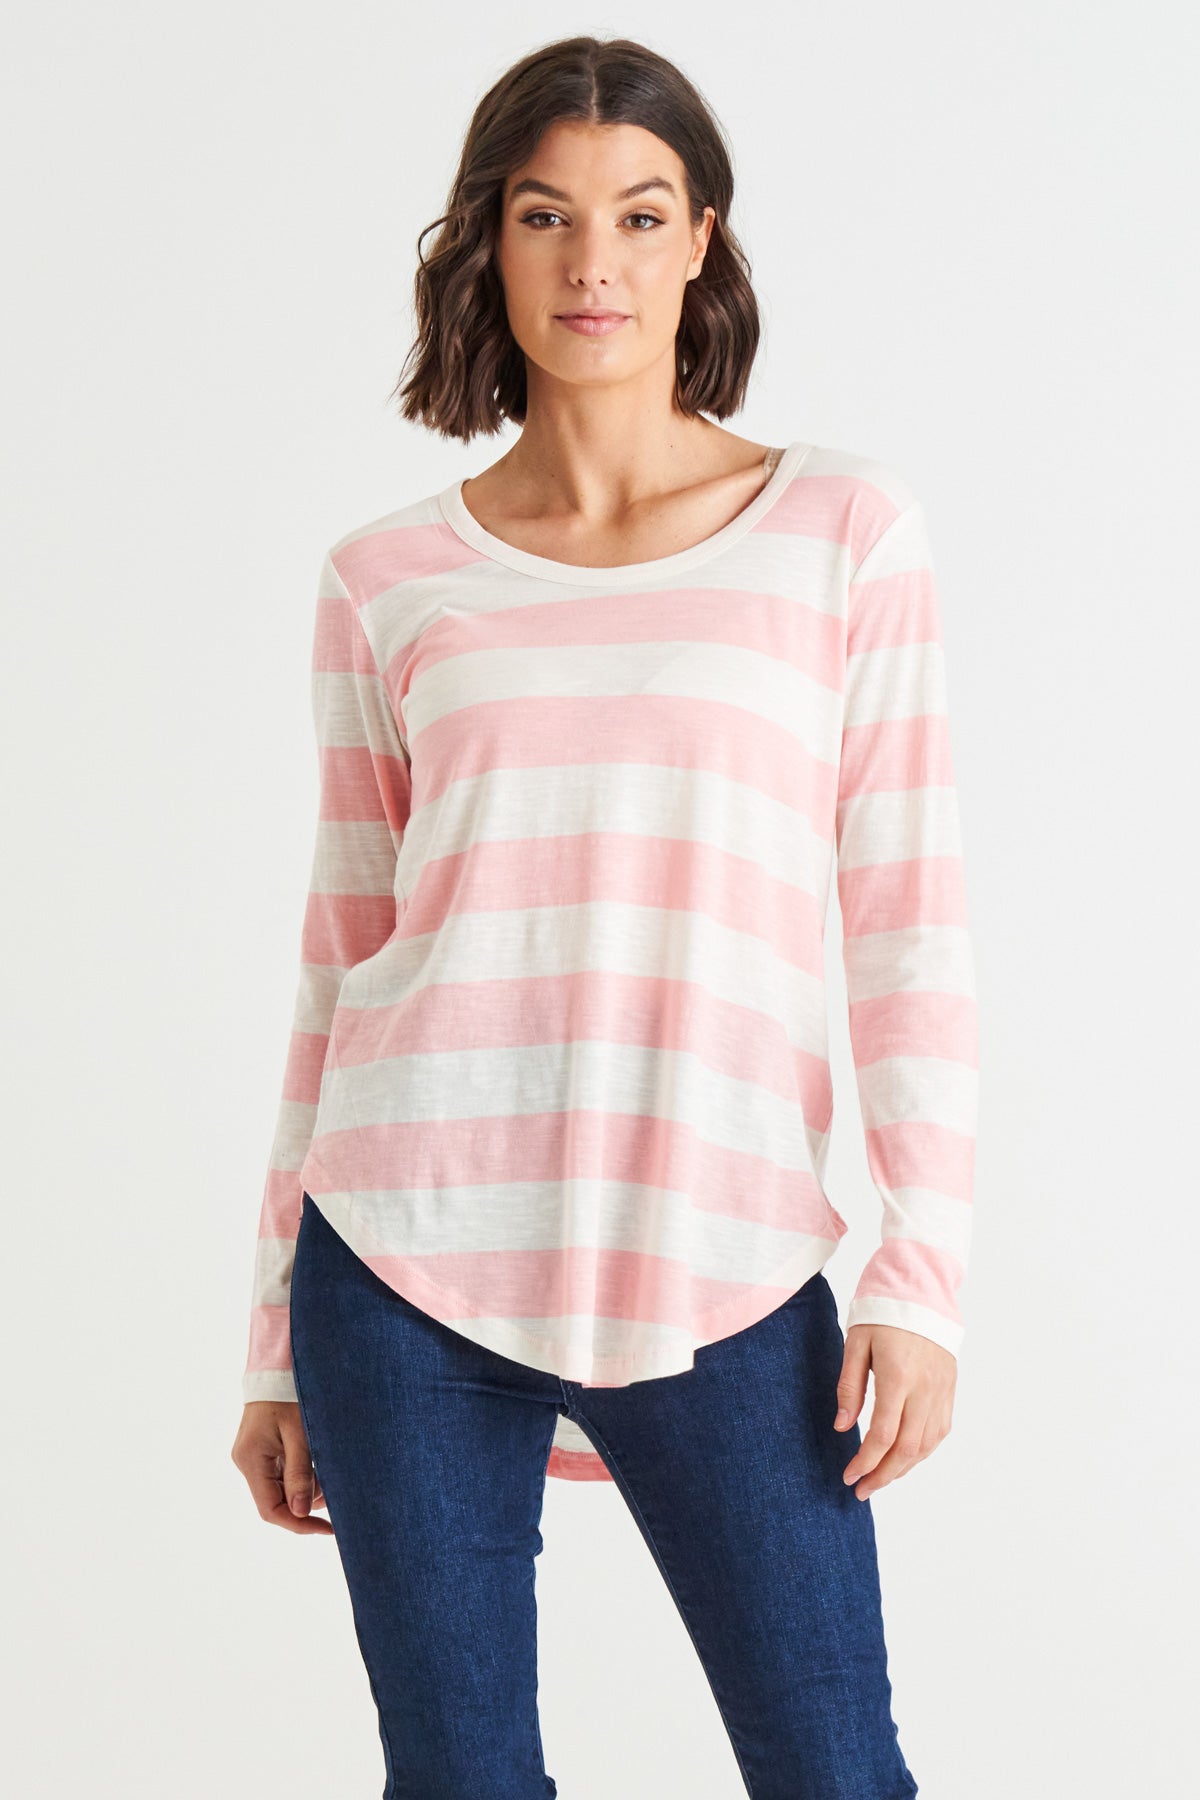 Megan Long Sleeve Cotton Basic Top - Baby Pink Stripe